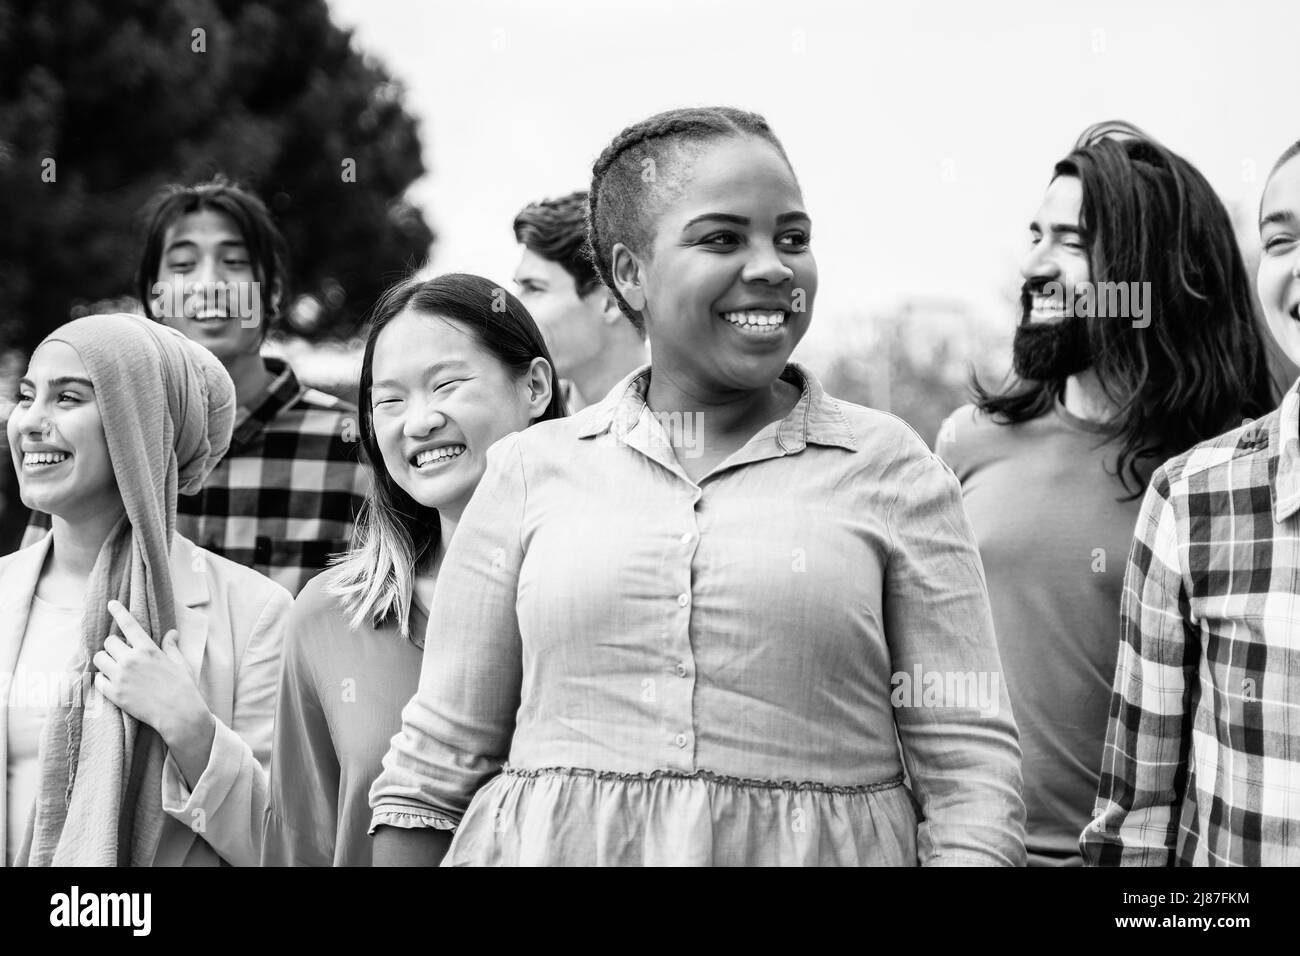 Jeunes multiethniques s'amusant à marcher ensemble en plein air - Focus sur le visage de fille asiatique - montage noir et blanc Banque D'Images